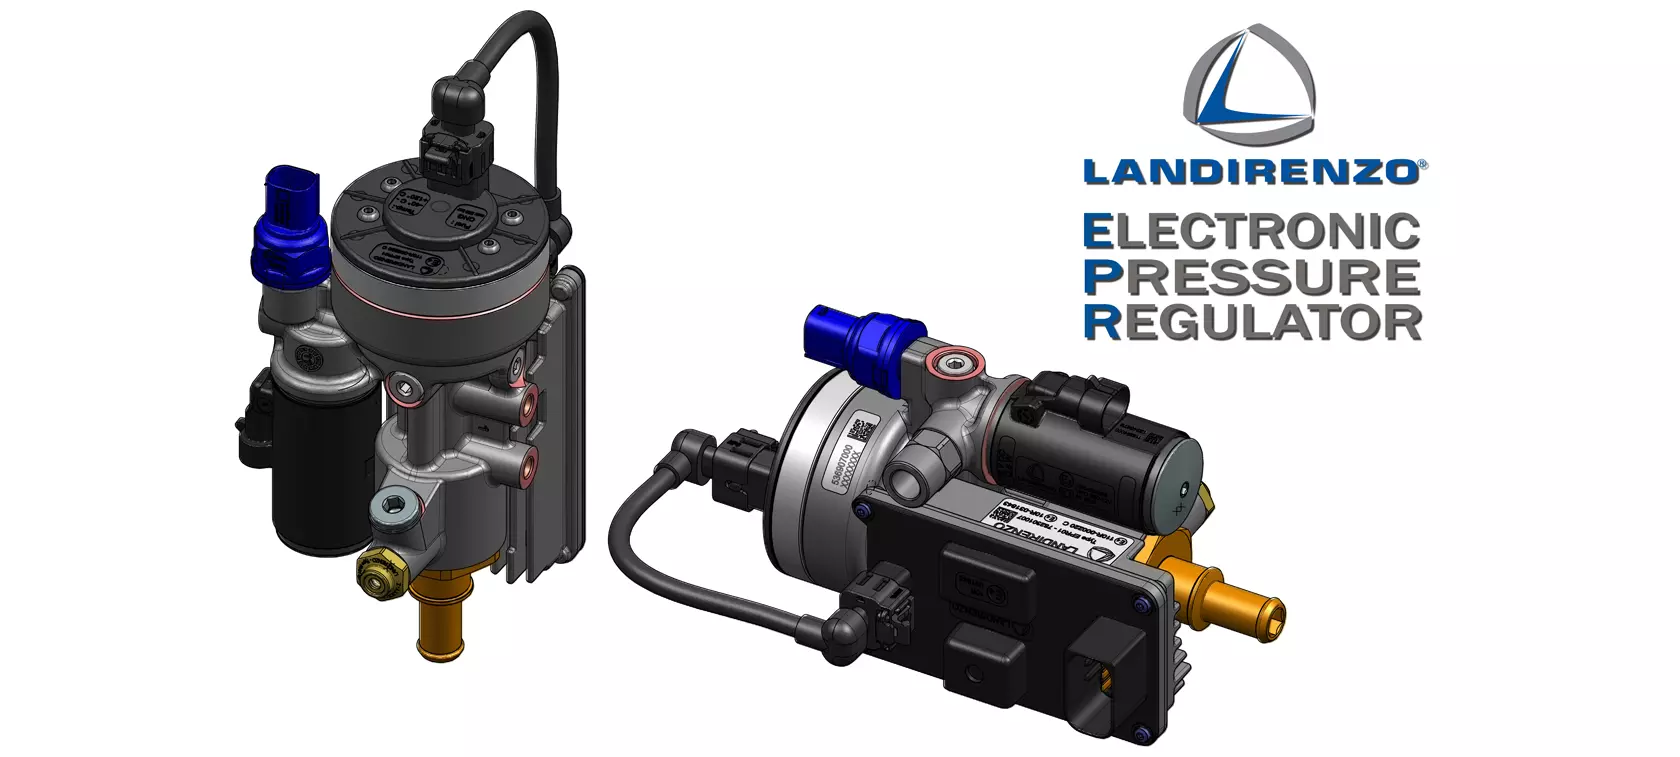 EPR - Landi Renzo's new pressure regulator